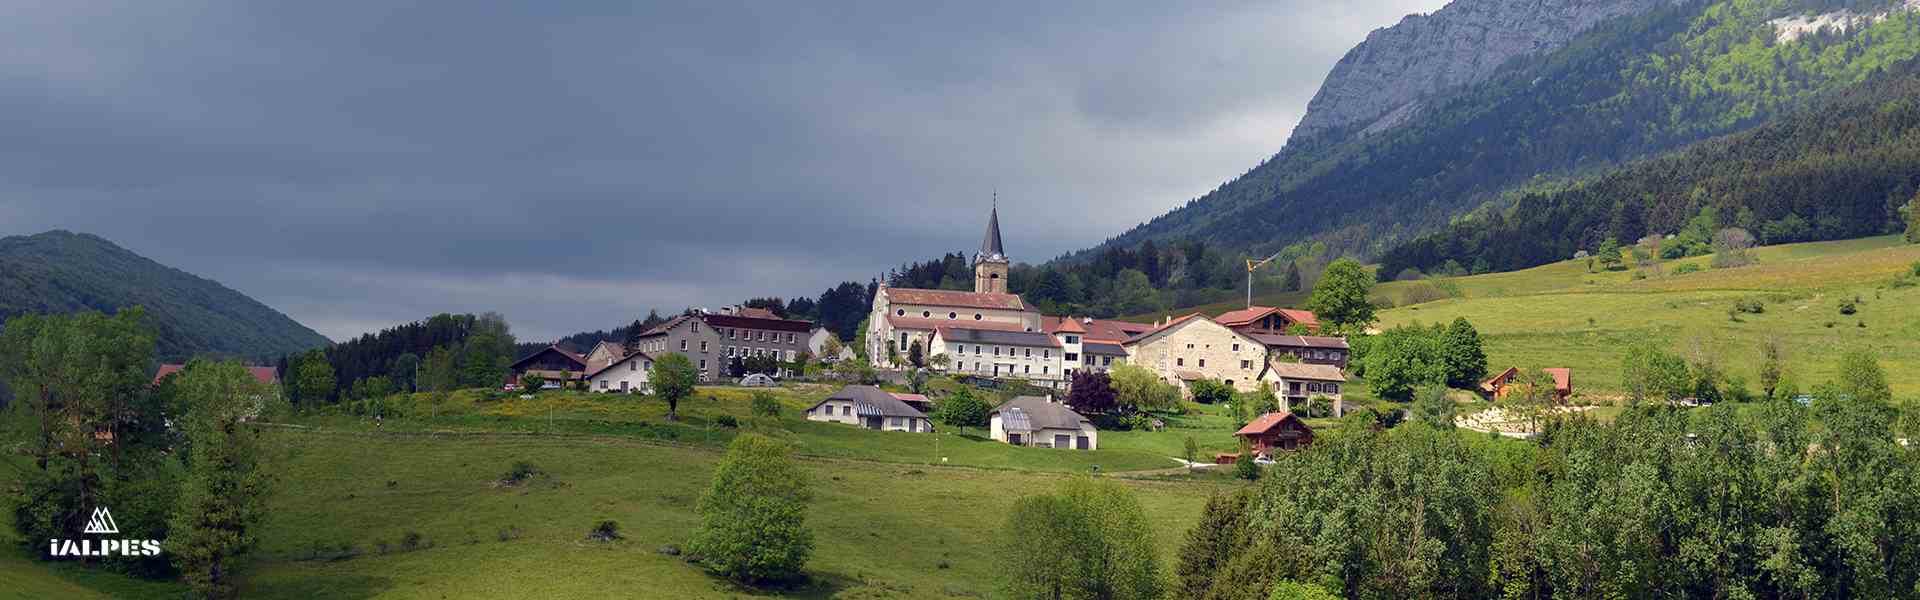 Village du Vercors, Isère